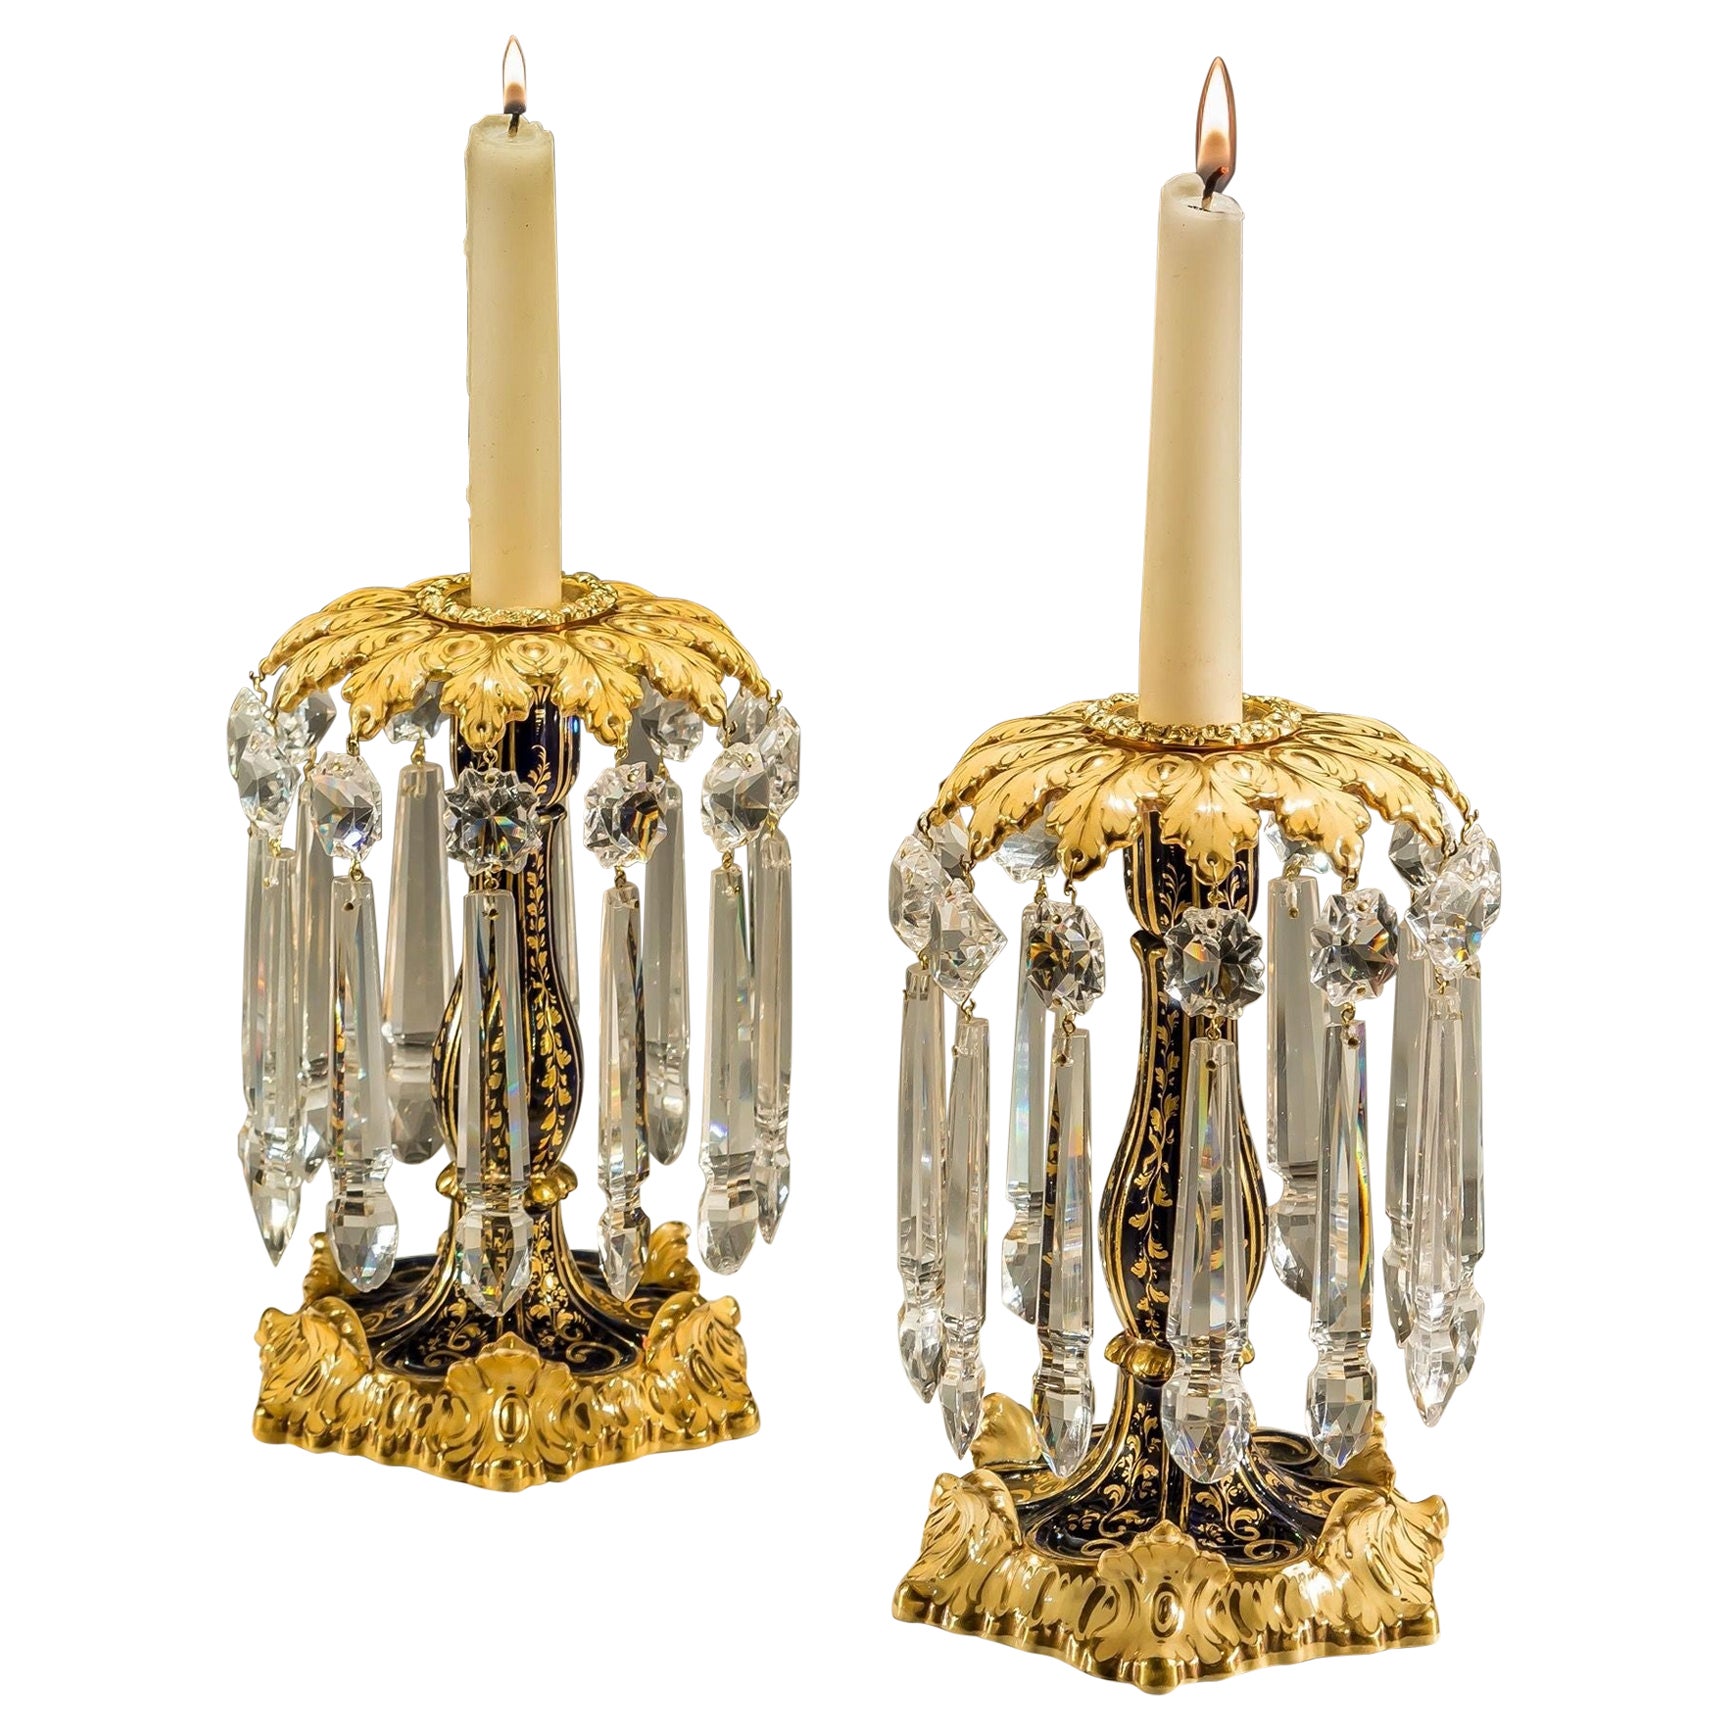 Ein feines Paar Rockingham-Porzellan-Kerzenständer